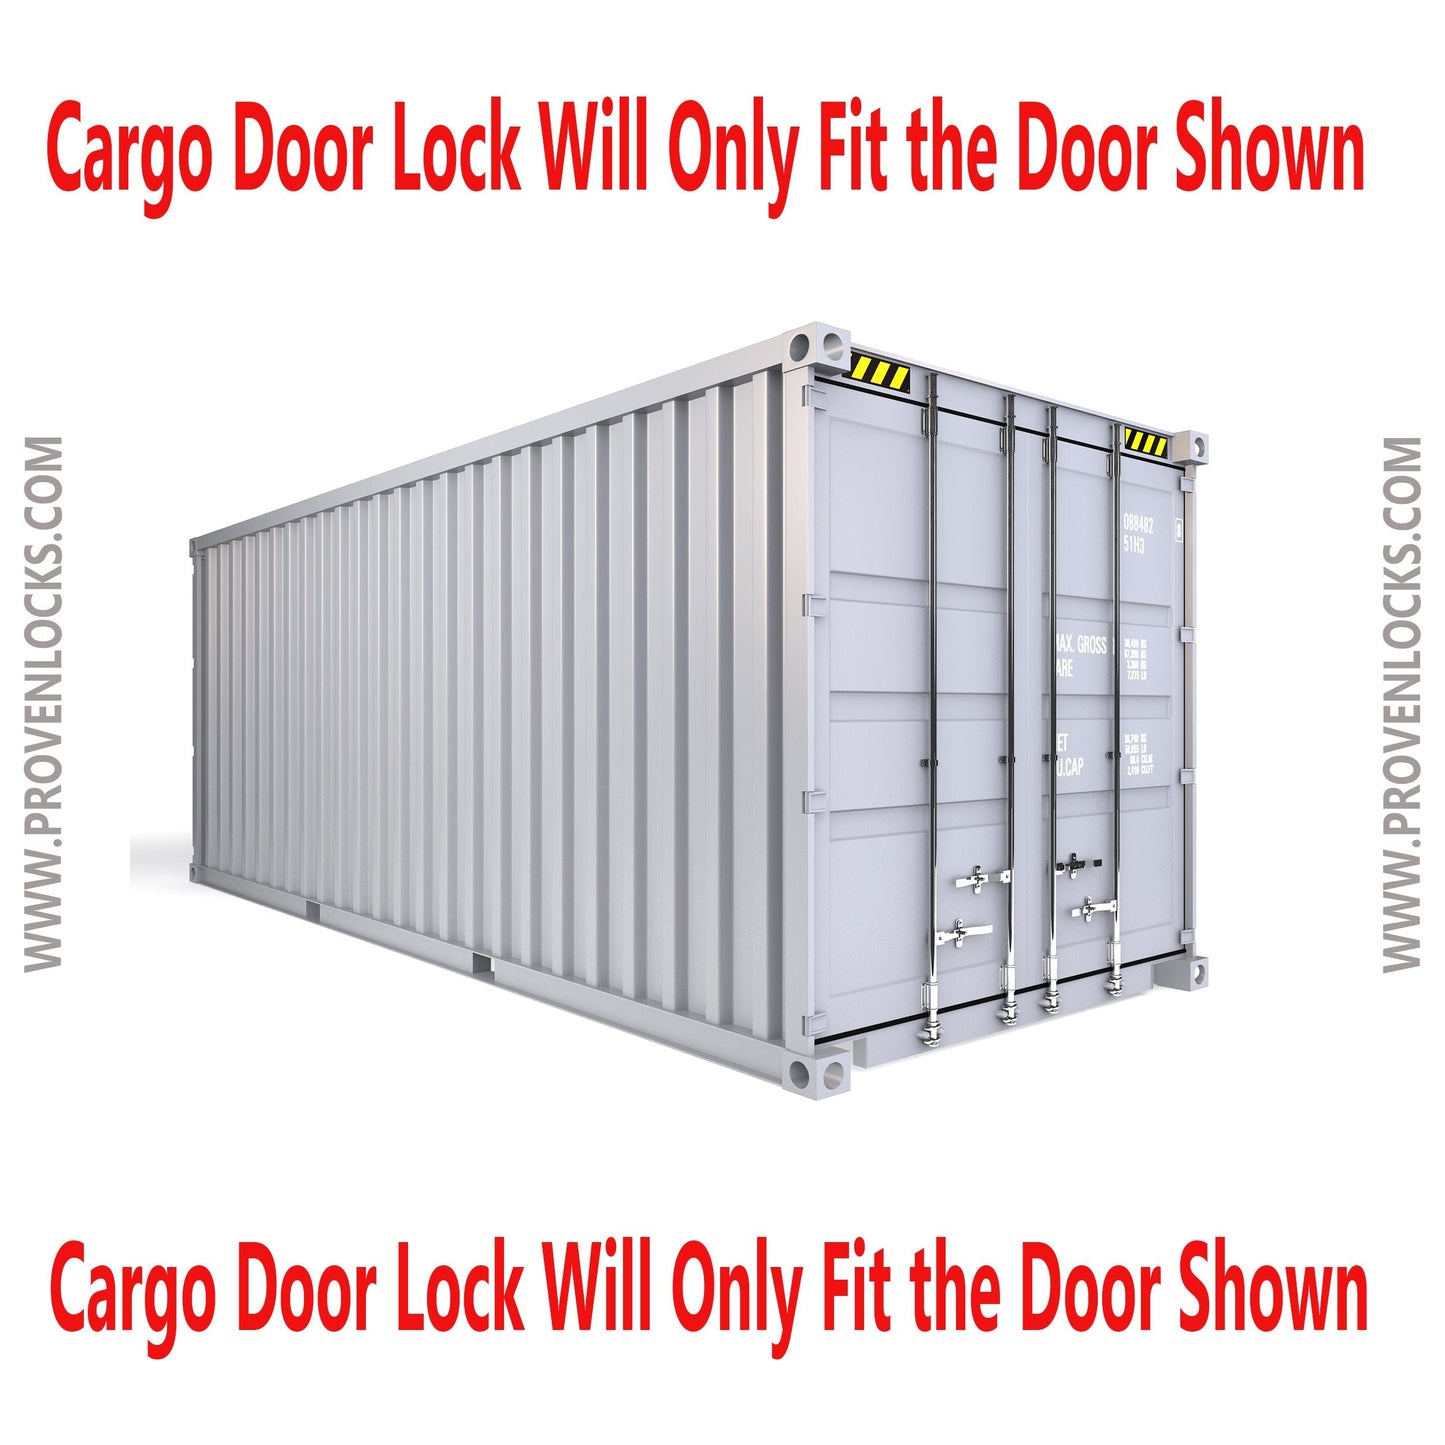 Cargo Door Lock other locks Proven Industries 